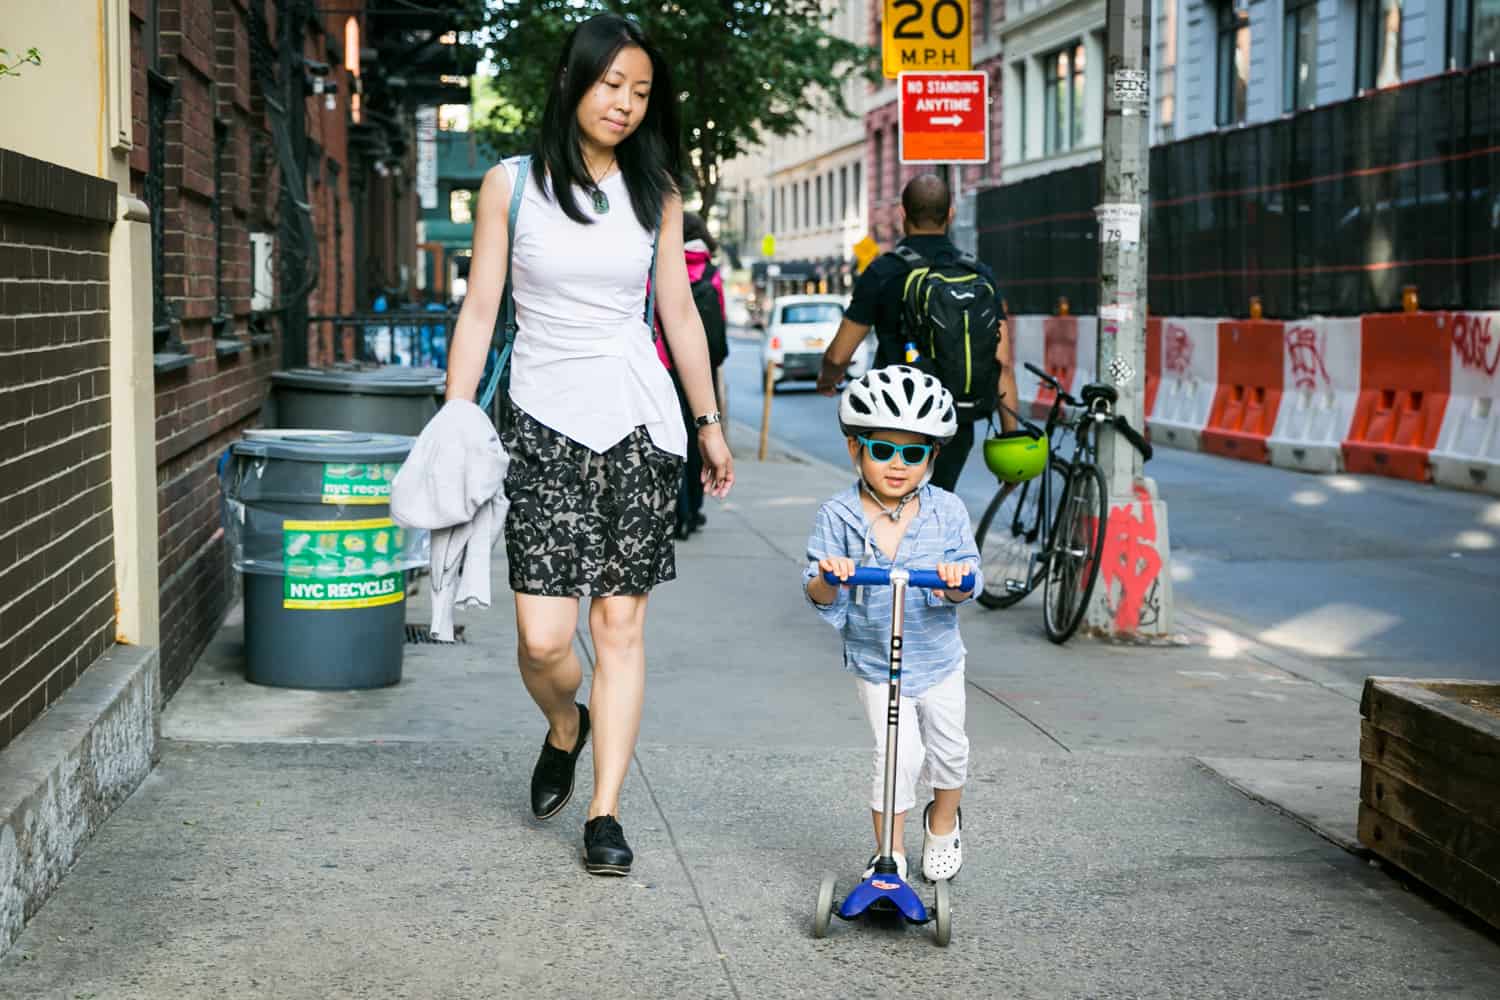 Mother following little boy on scooter wearing helmet